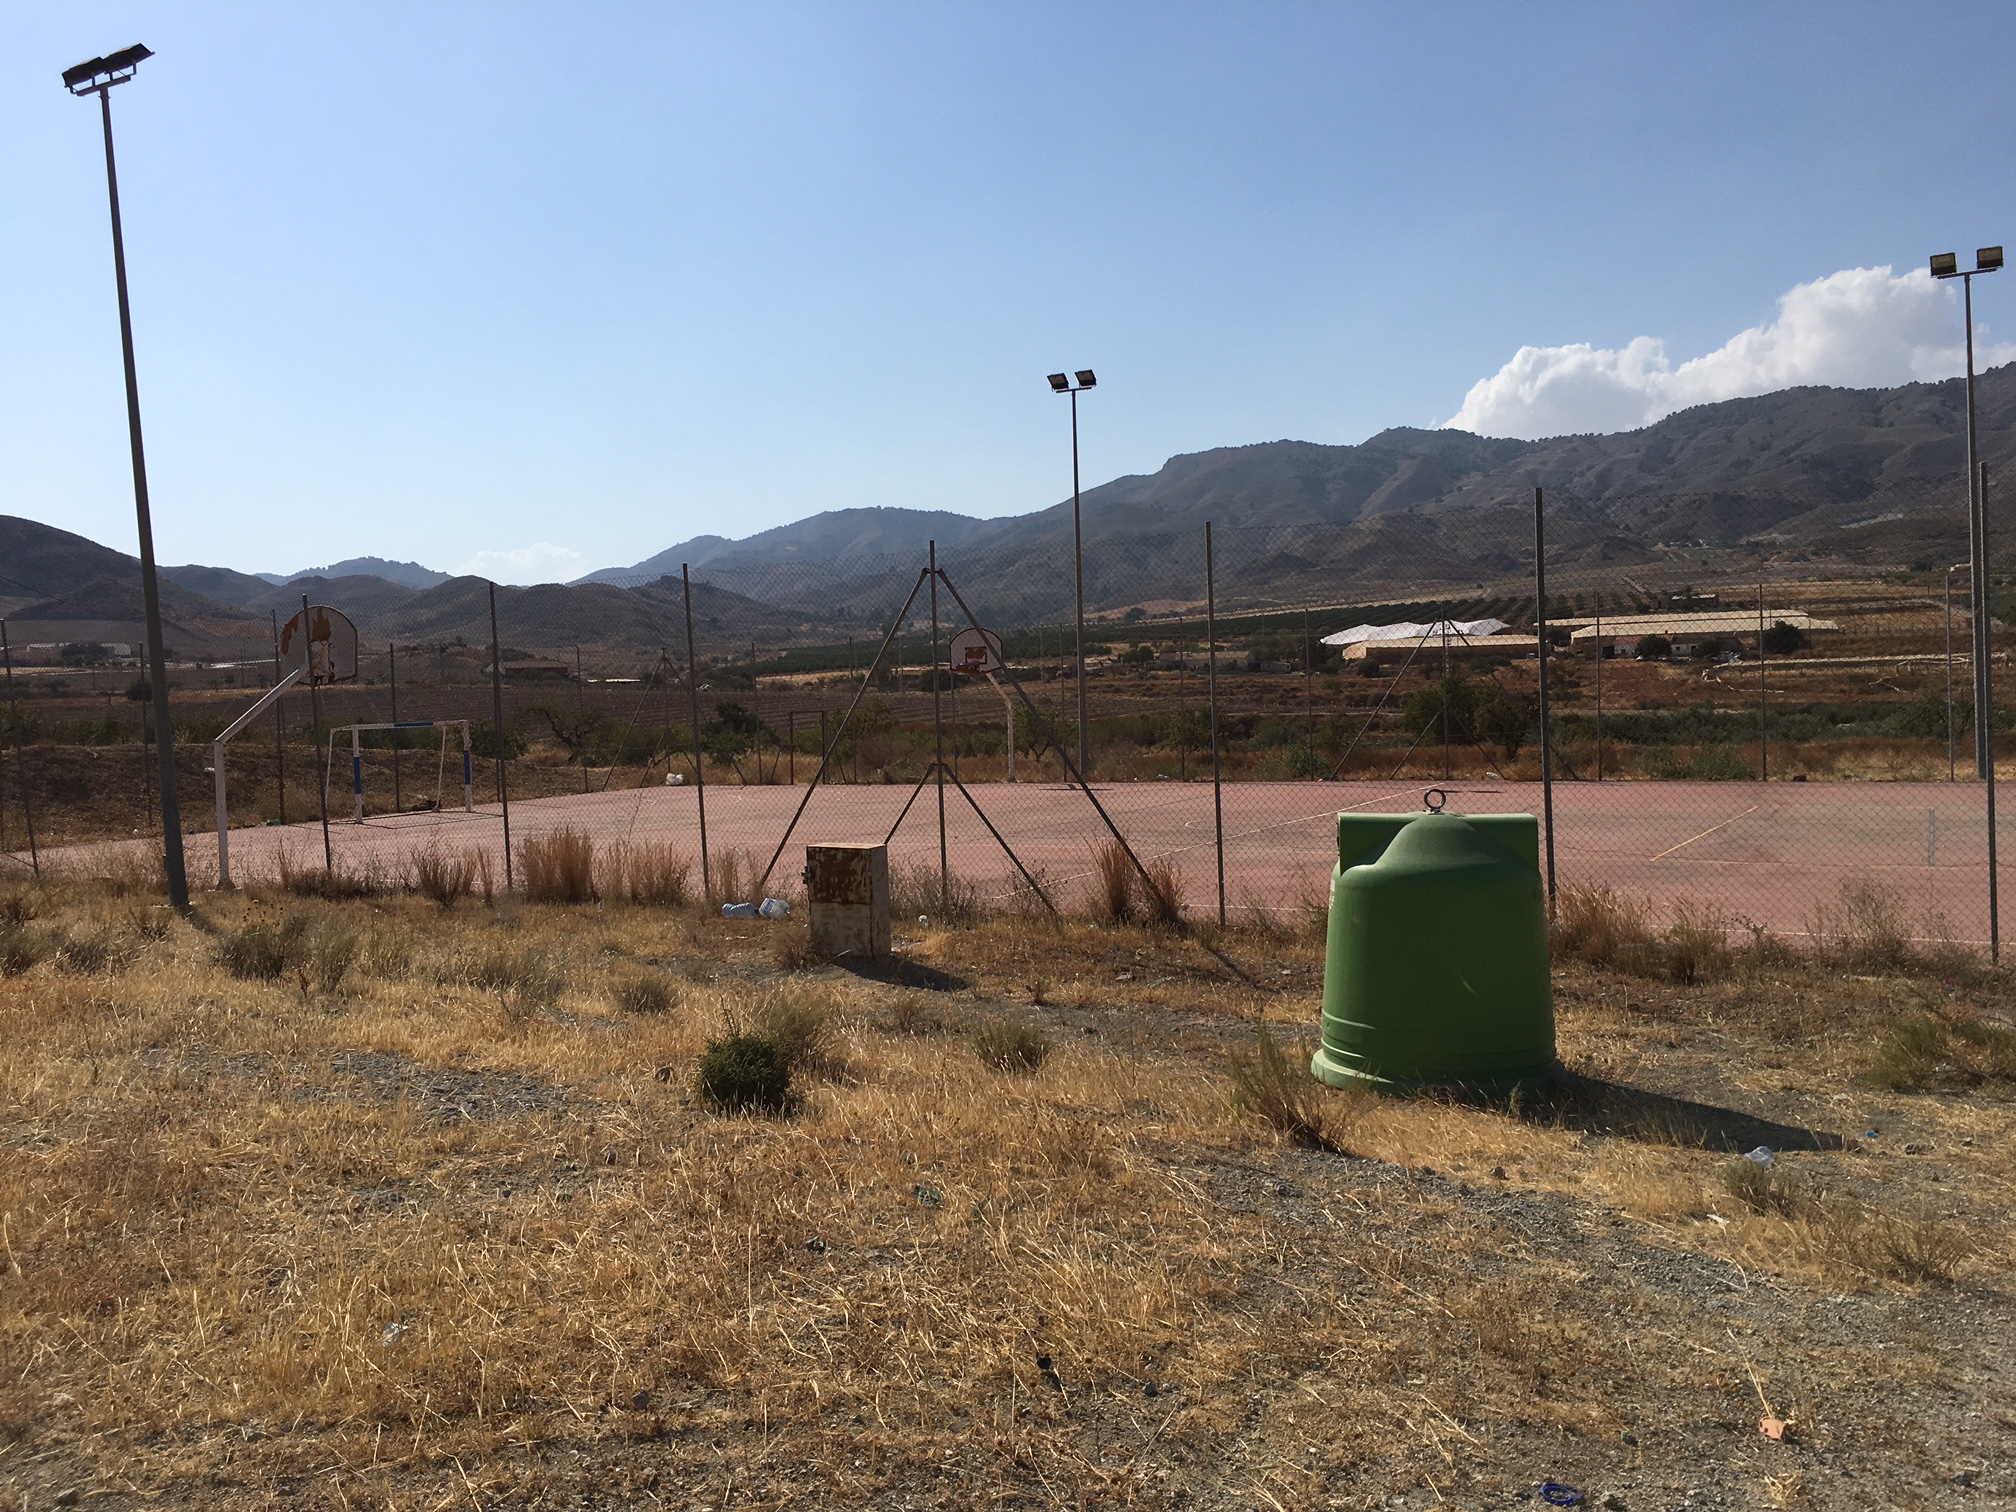 El PSOE denuncia el lamentable estado de la pista polideportiva de Morata, abandonada desde su inauguración en 2001